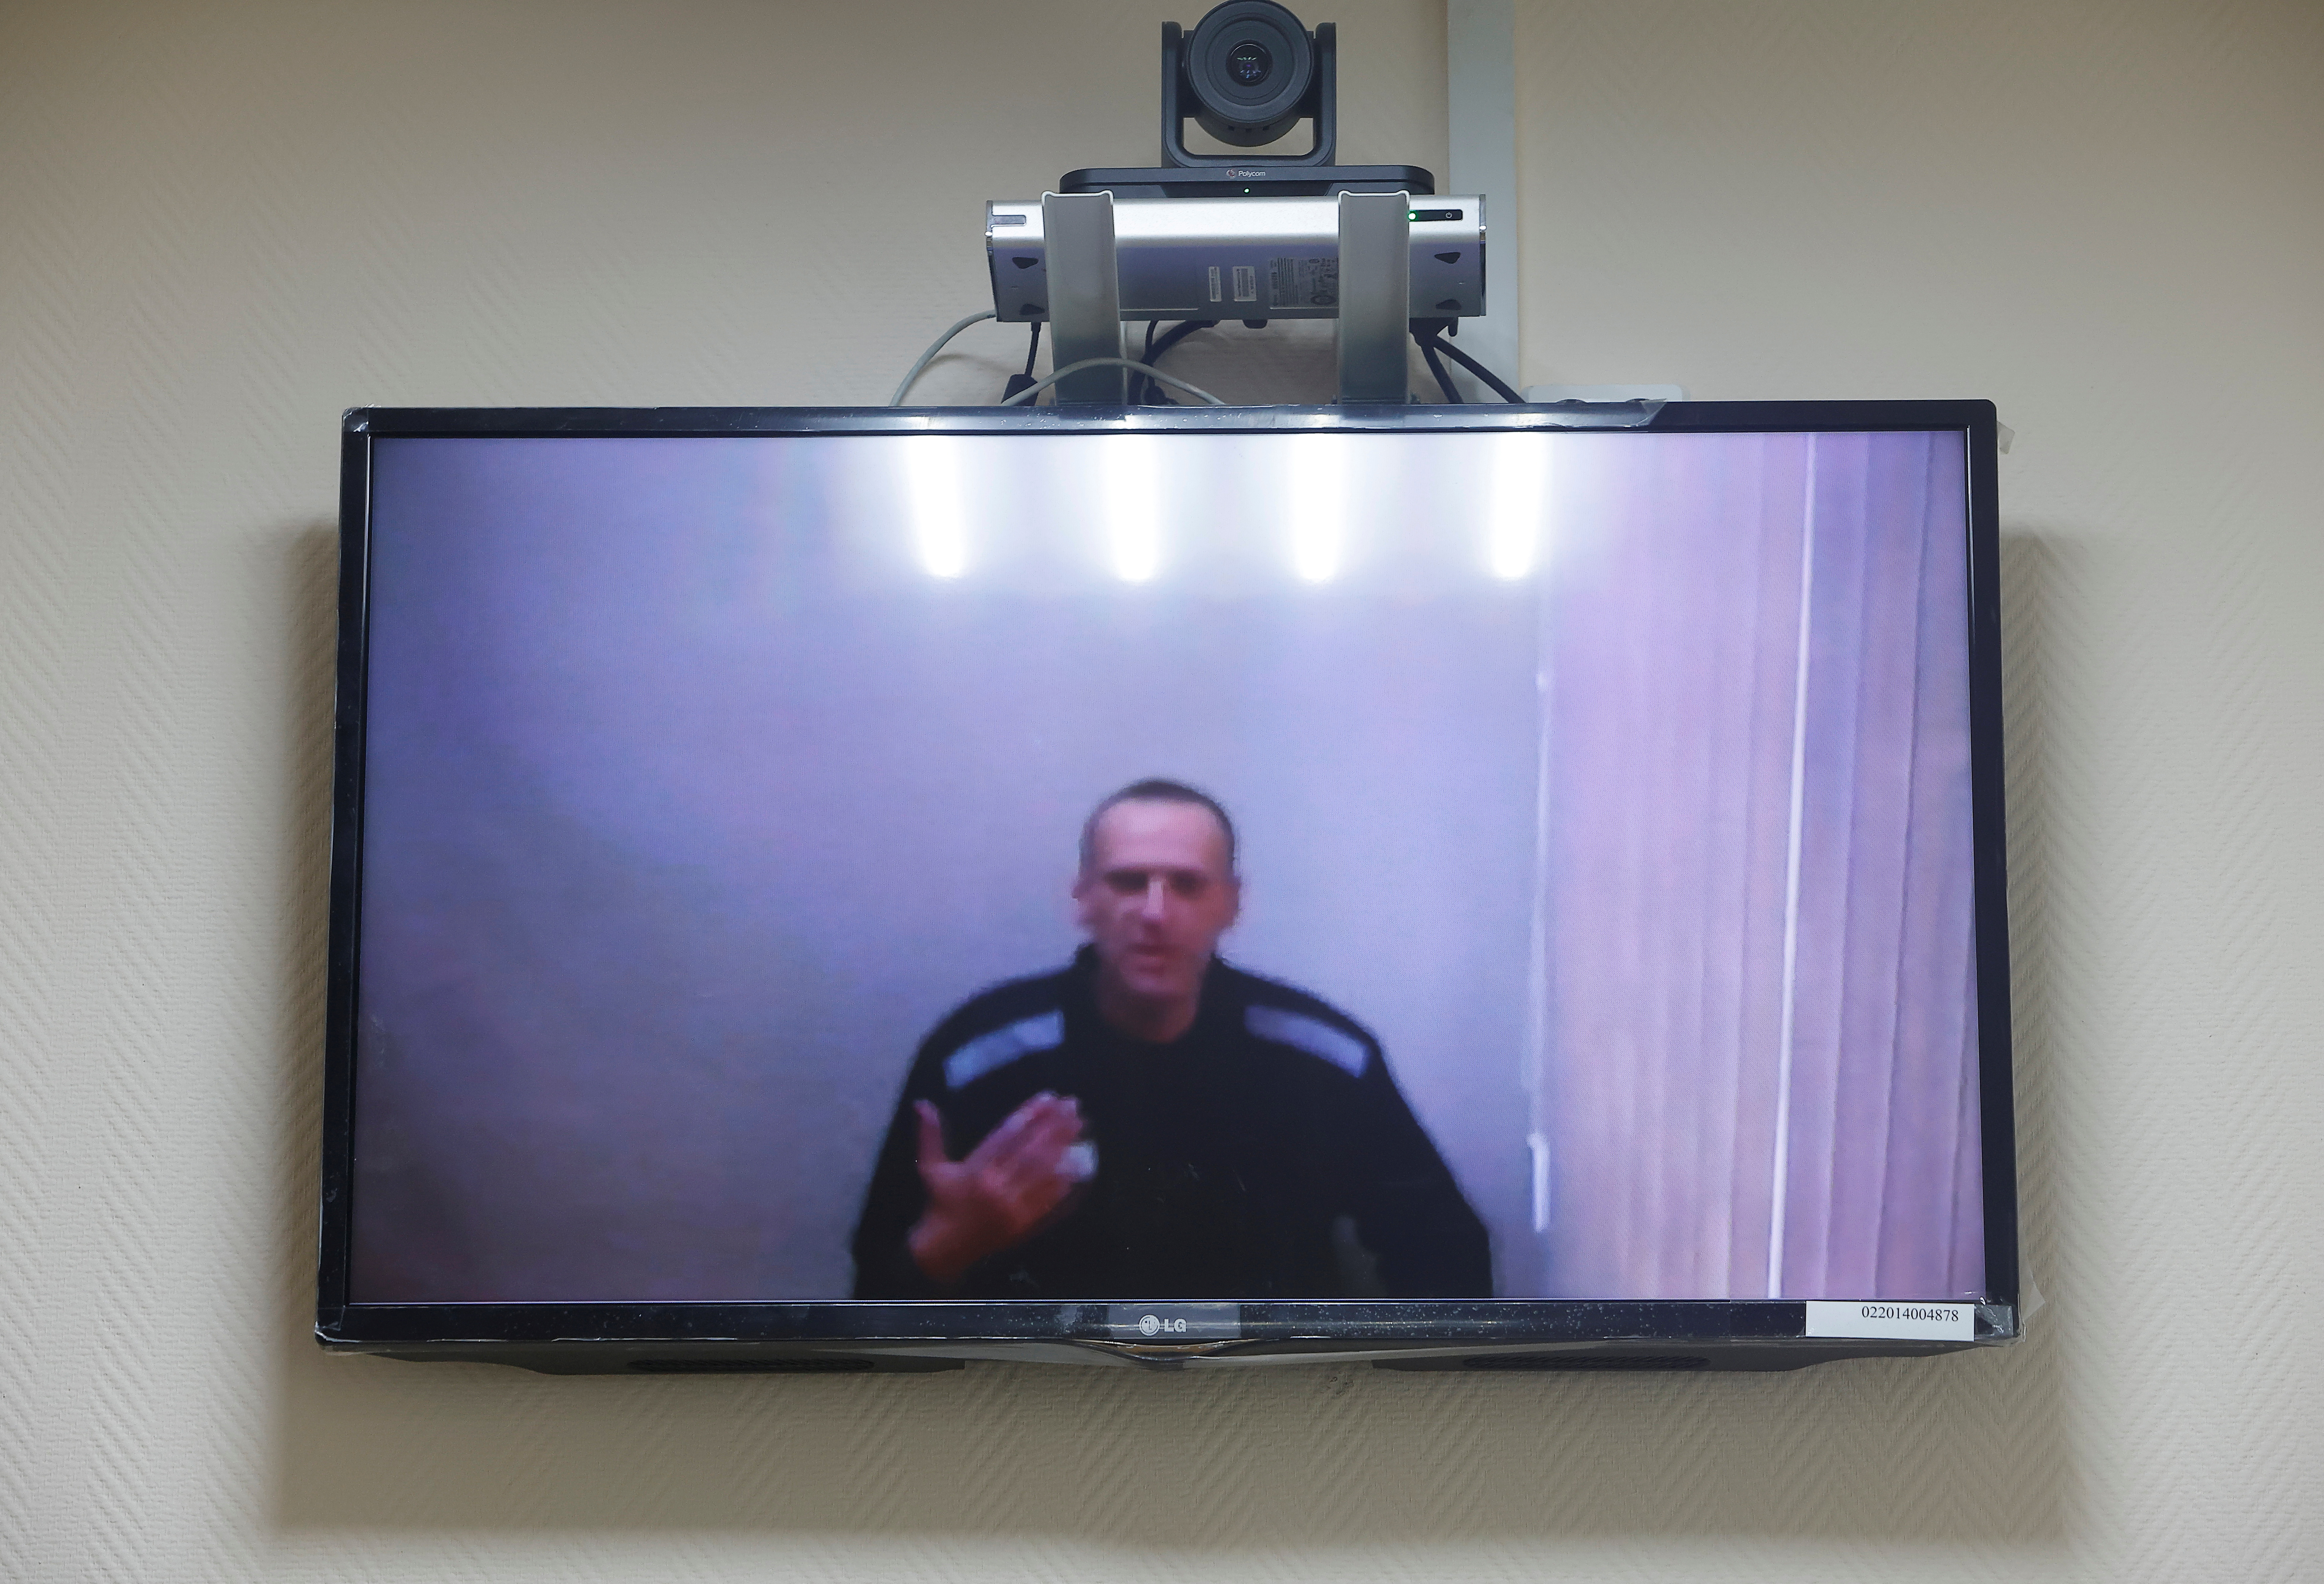 El líder de la oposición rusa Alexei Navalny es visto en una pantalla durante una audiencia para considerar sus demandas contra la colonia penal por las condiciones de detención allí, en el tribunal de distrito de Petushki en Petushki, Rusia, el 26 de mayo de 2021. (REUTERS / Maxim Shemetov)